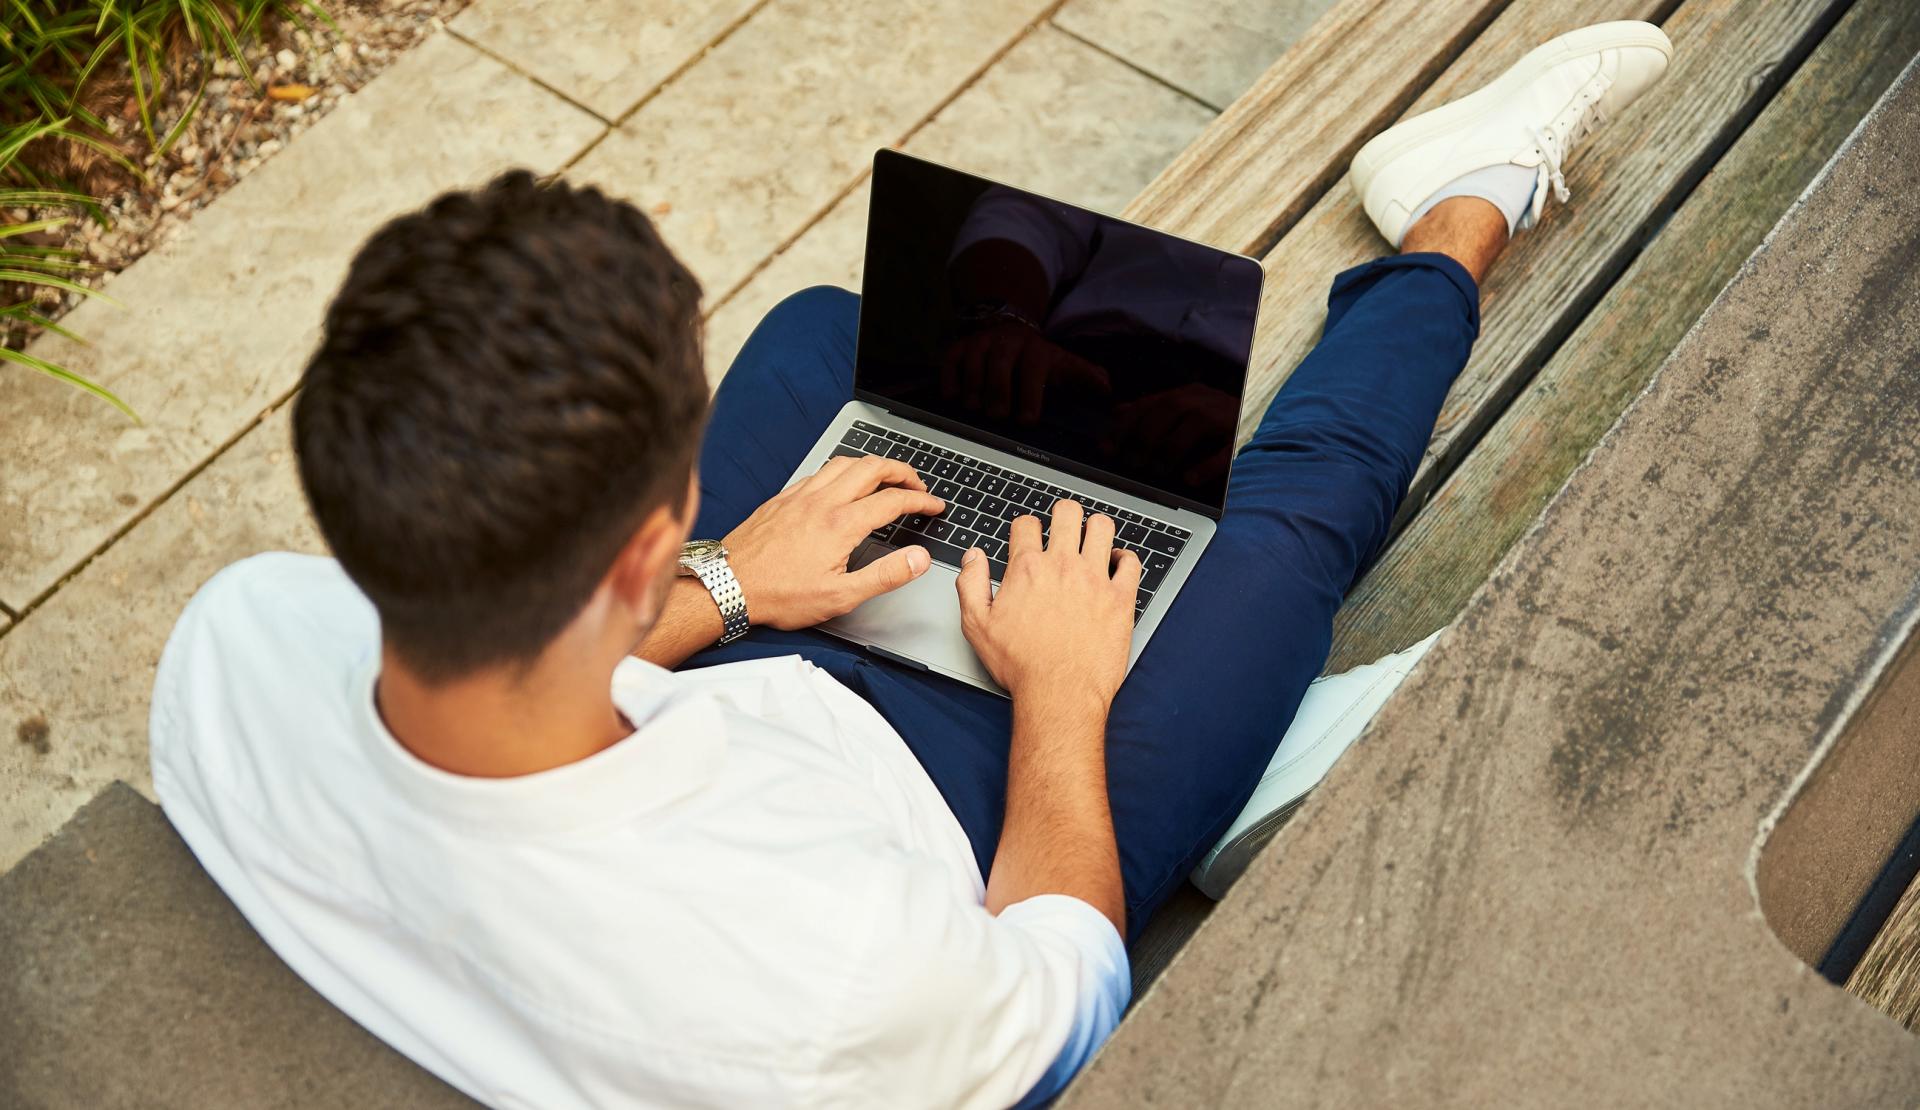 Student arbeitet im Freien am Laptop.